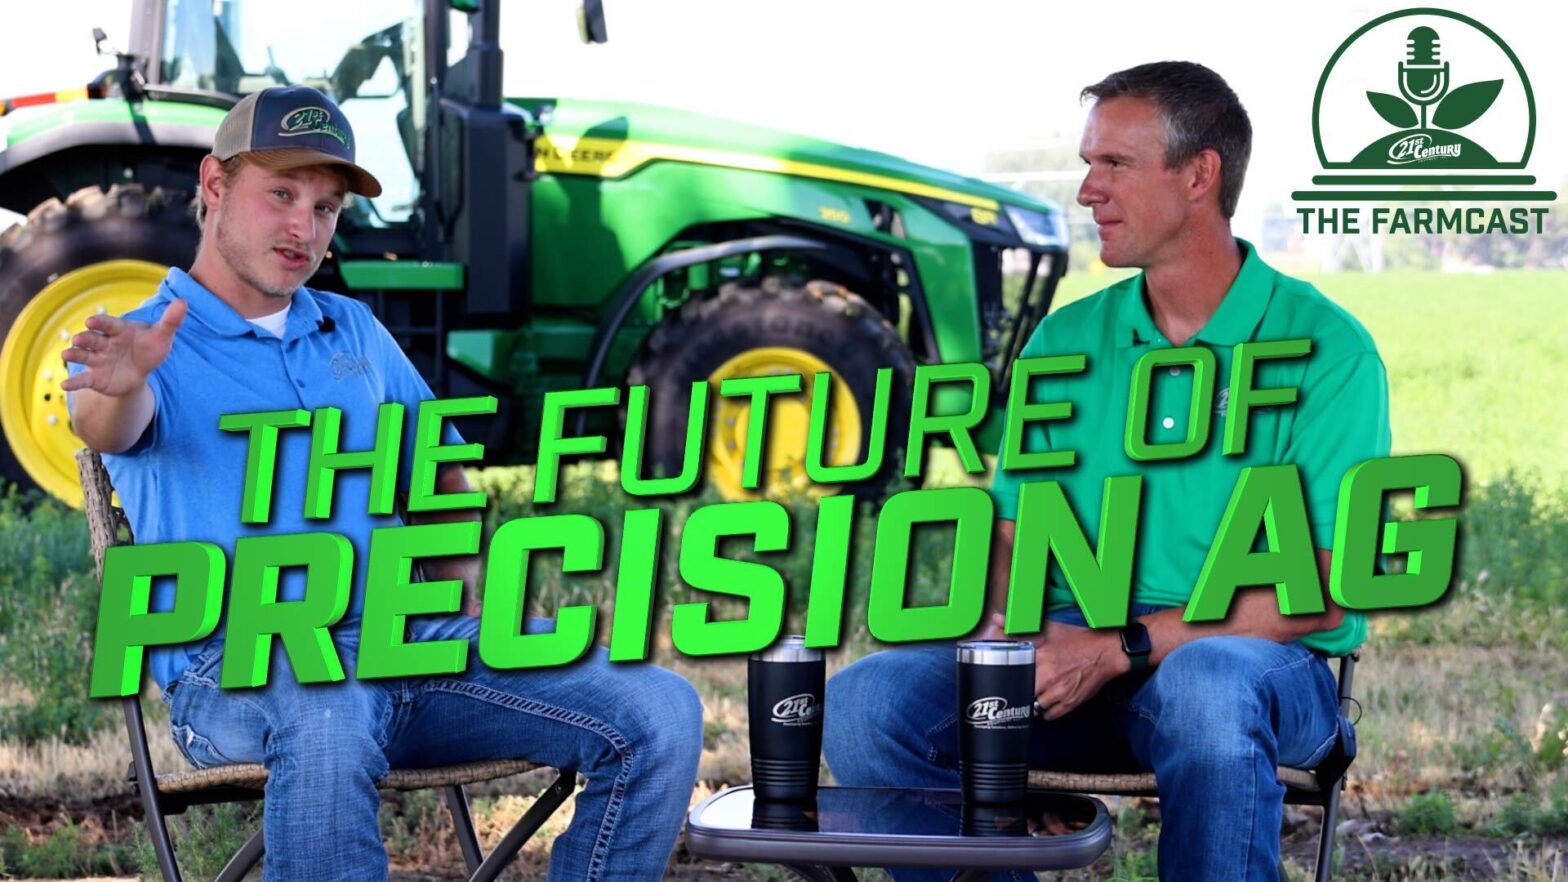 The FarmCast Episode #1 – The Future of Precision AG